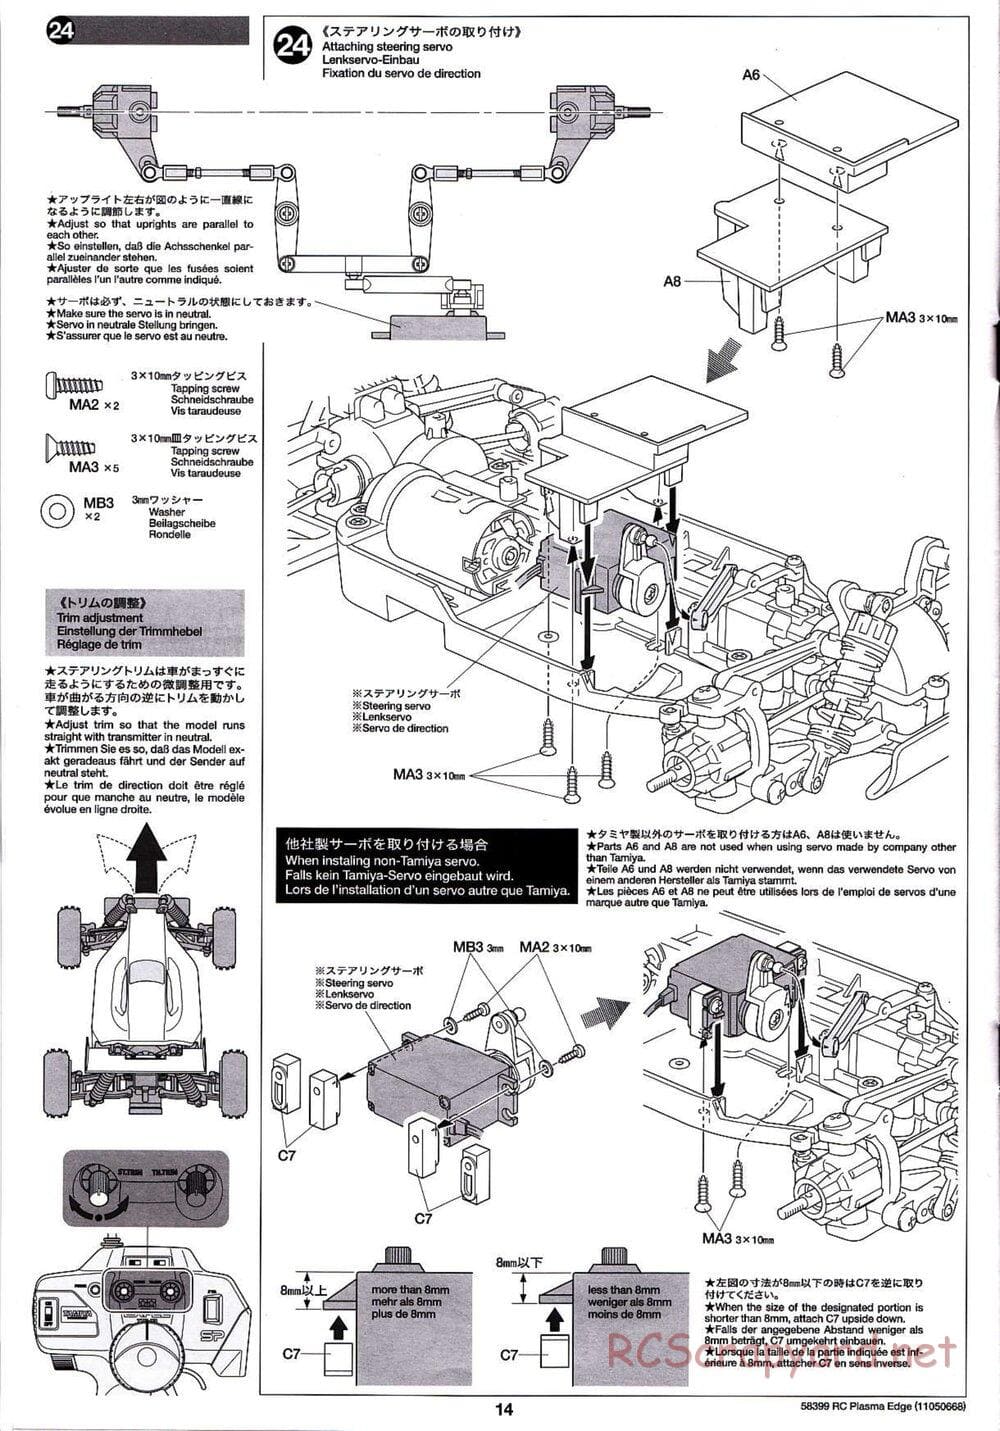 Tamiya - Plasma Edge Chassis - Manual - Page 14